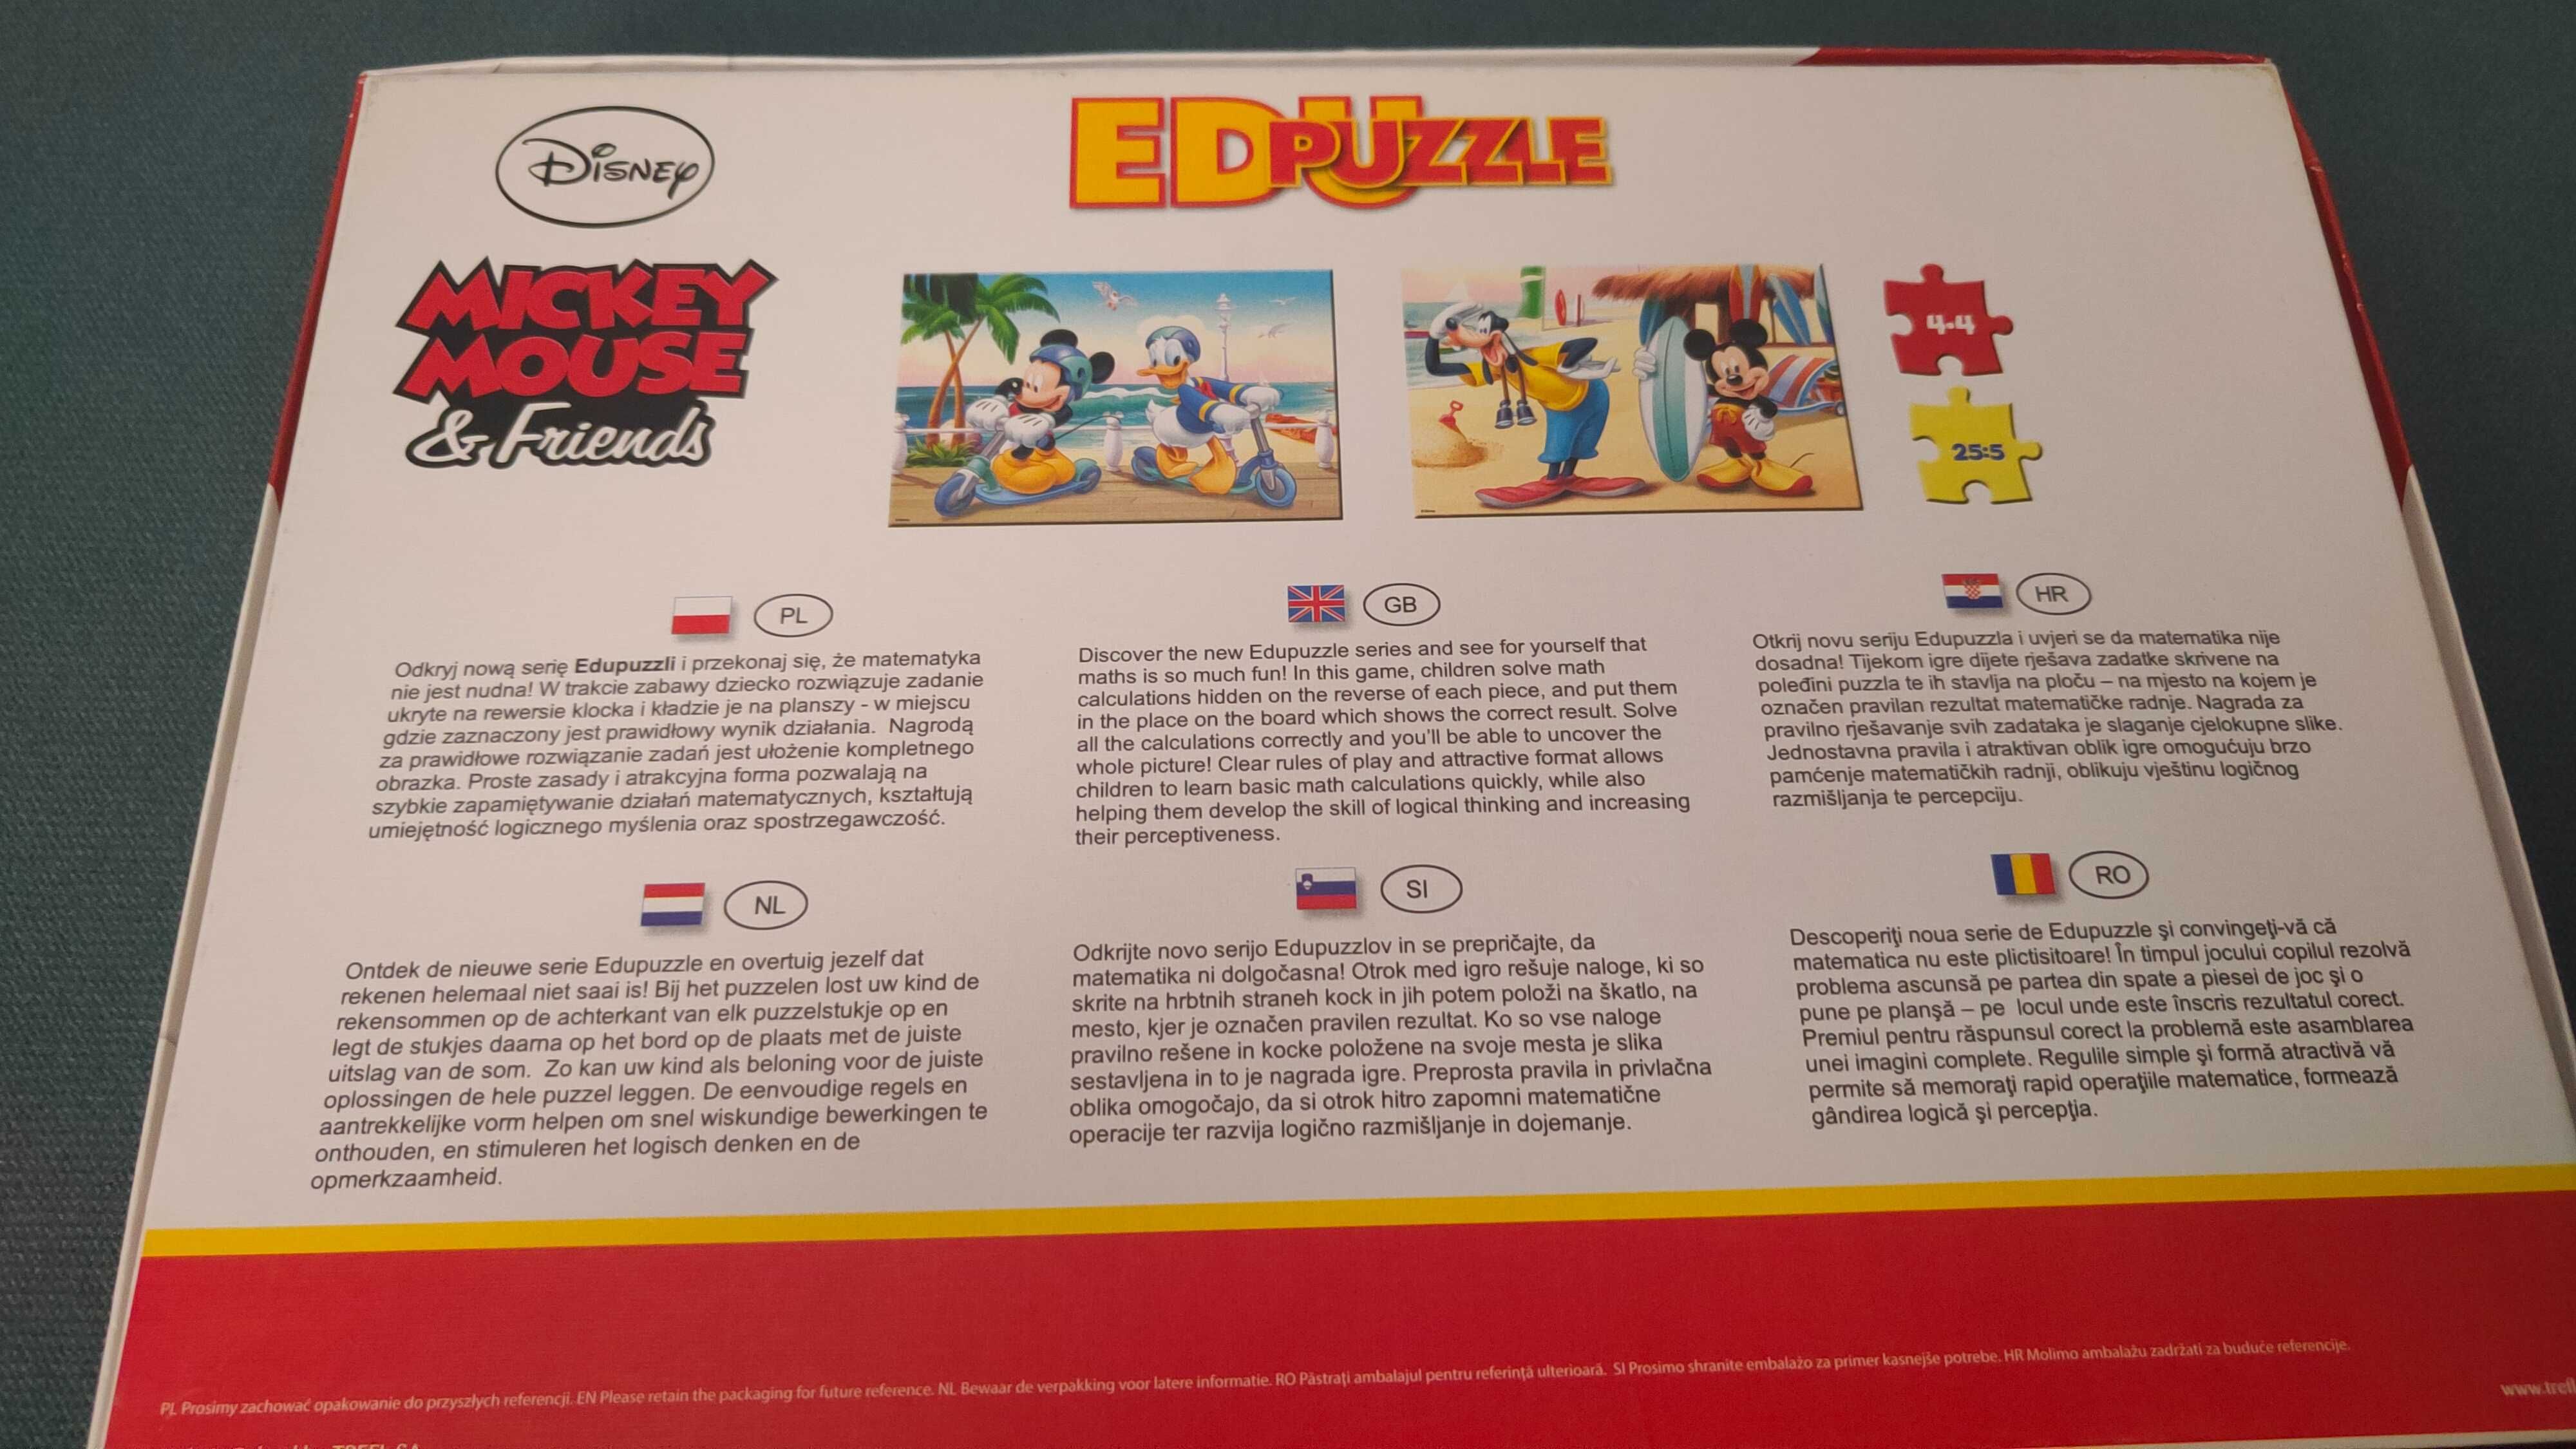 Puzzle Edukacyjne trefl Disney Mickey Mouse& Friends, 8+